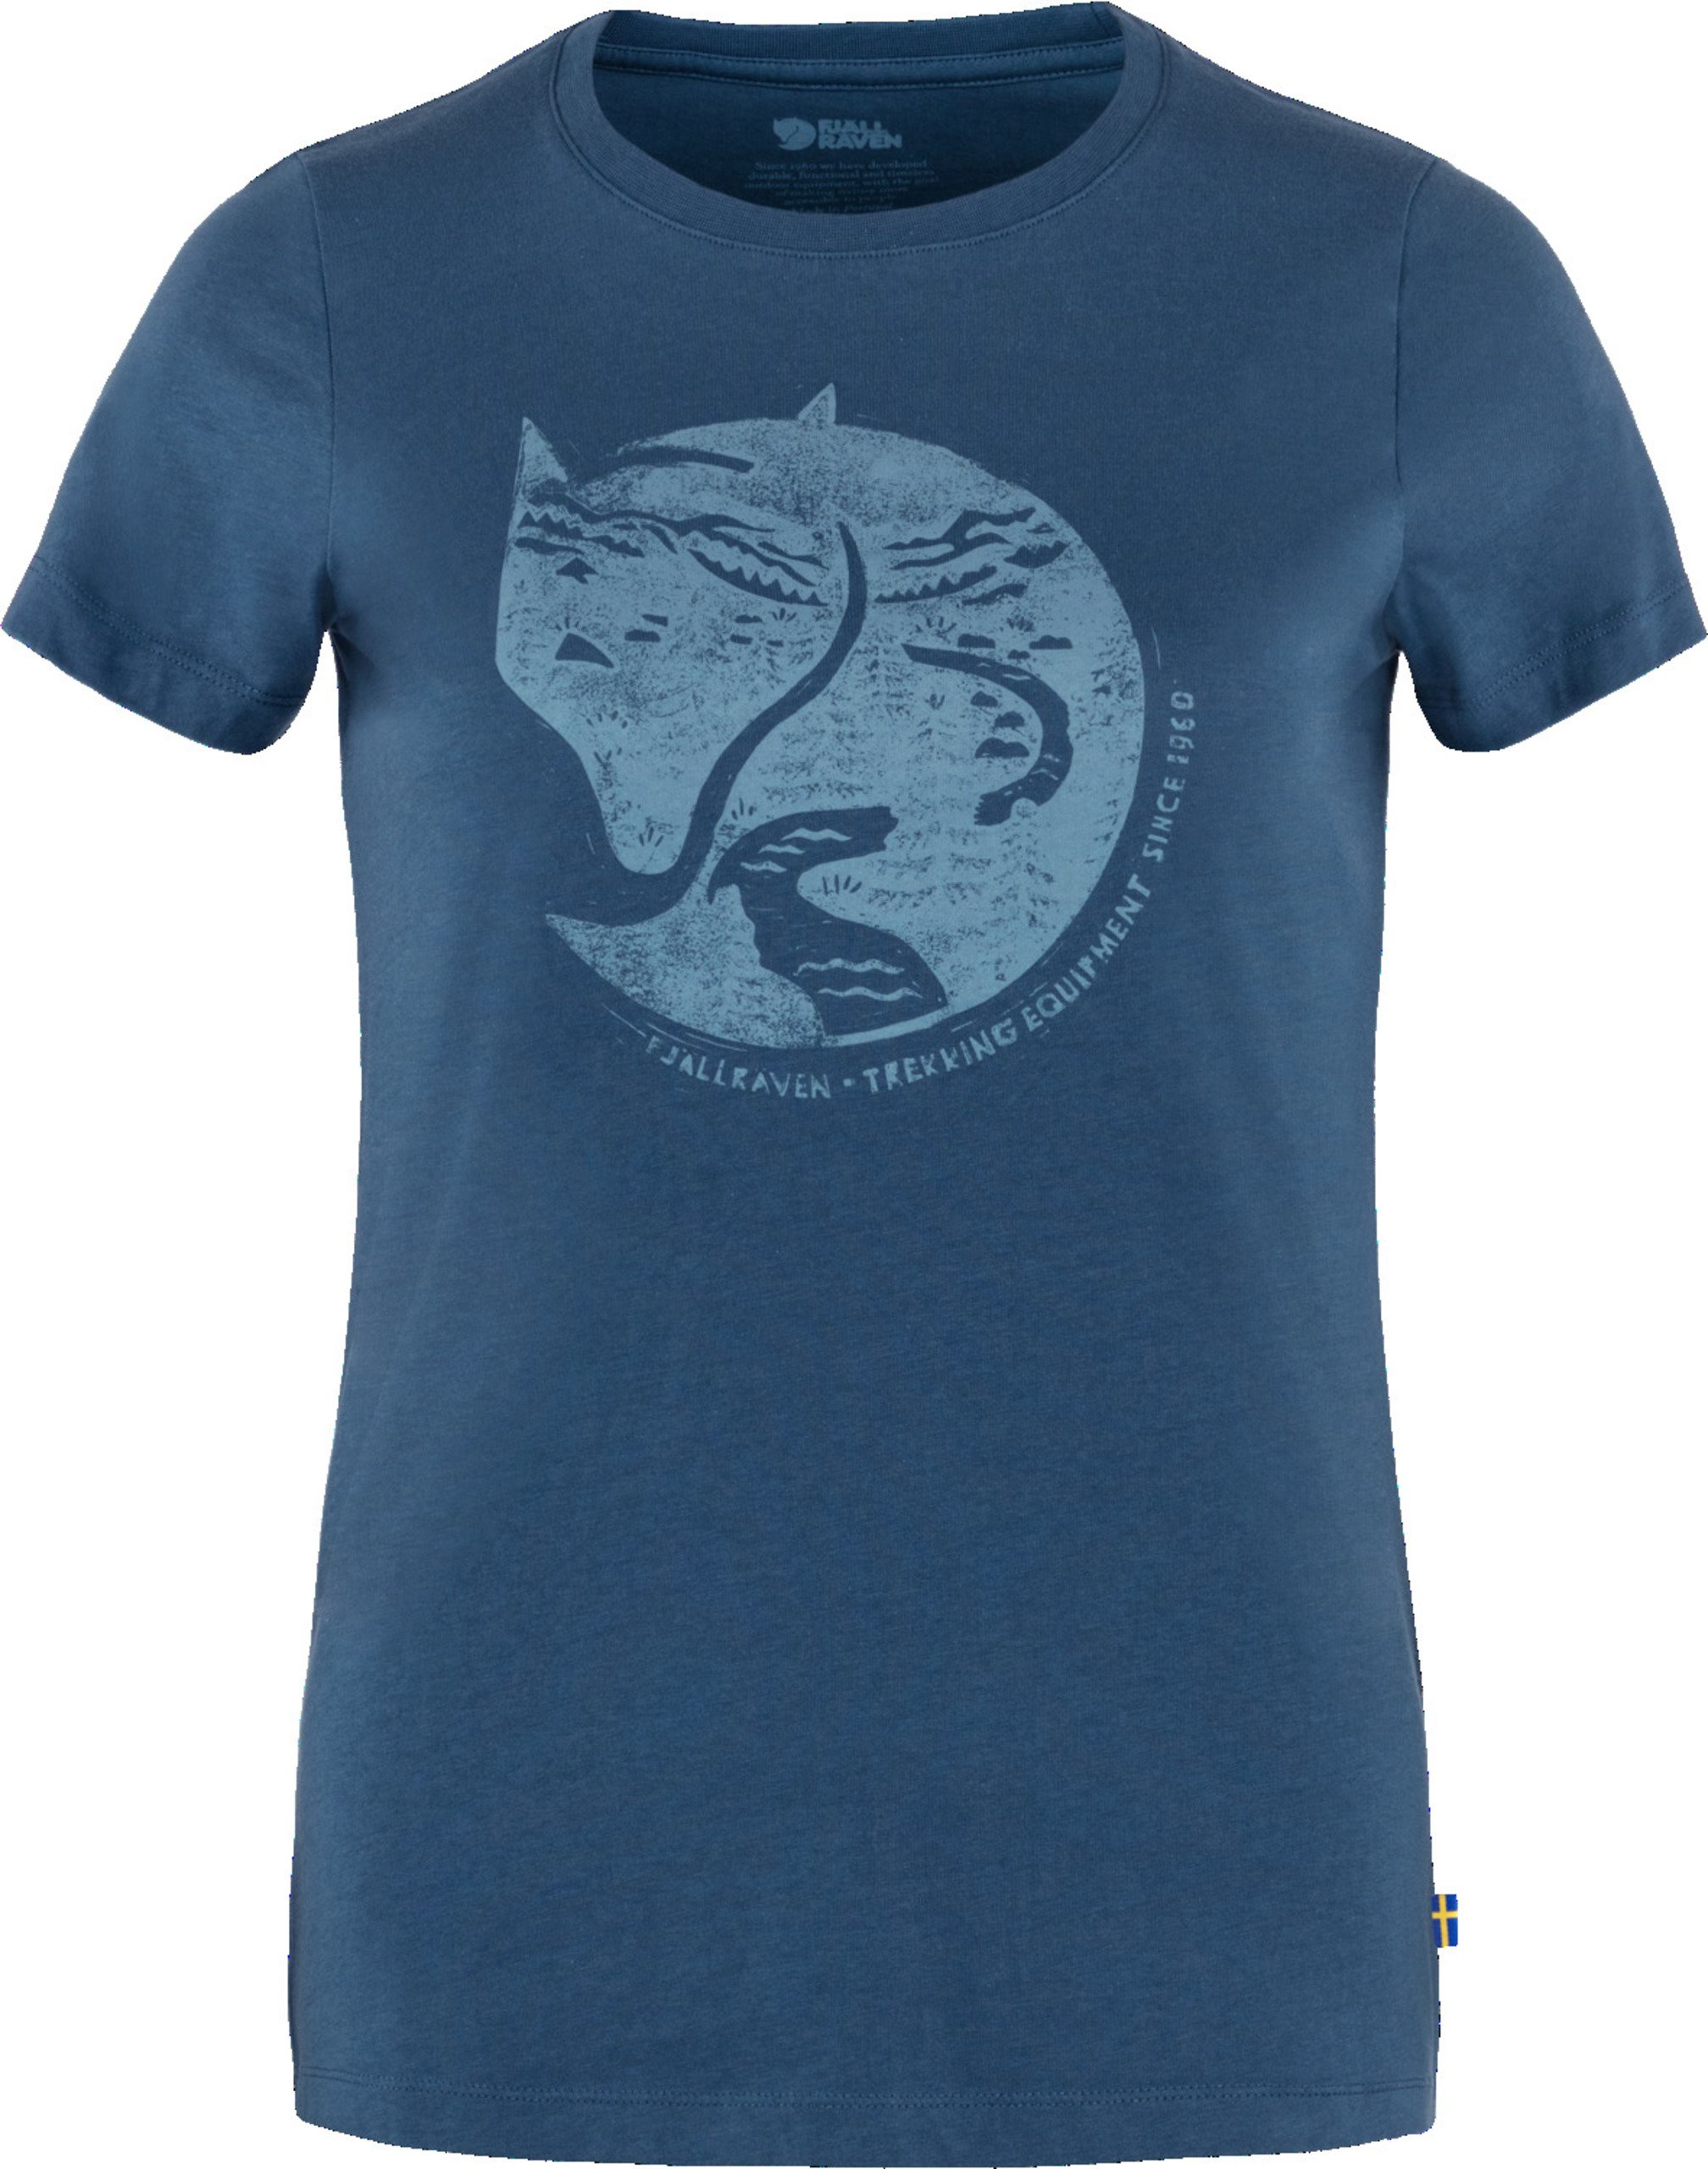 Fjällräven Damen-T-Shirt Arctic Fox Print